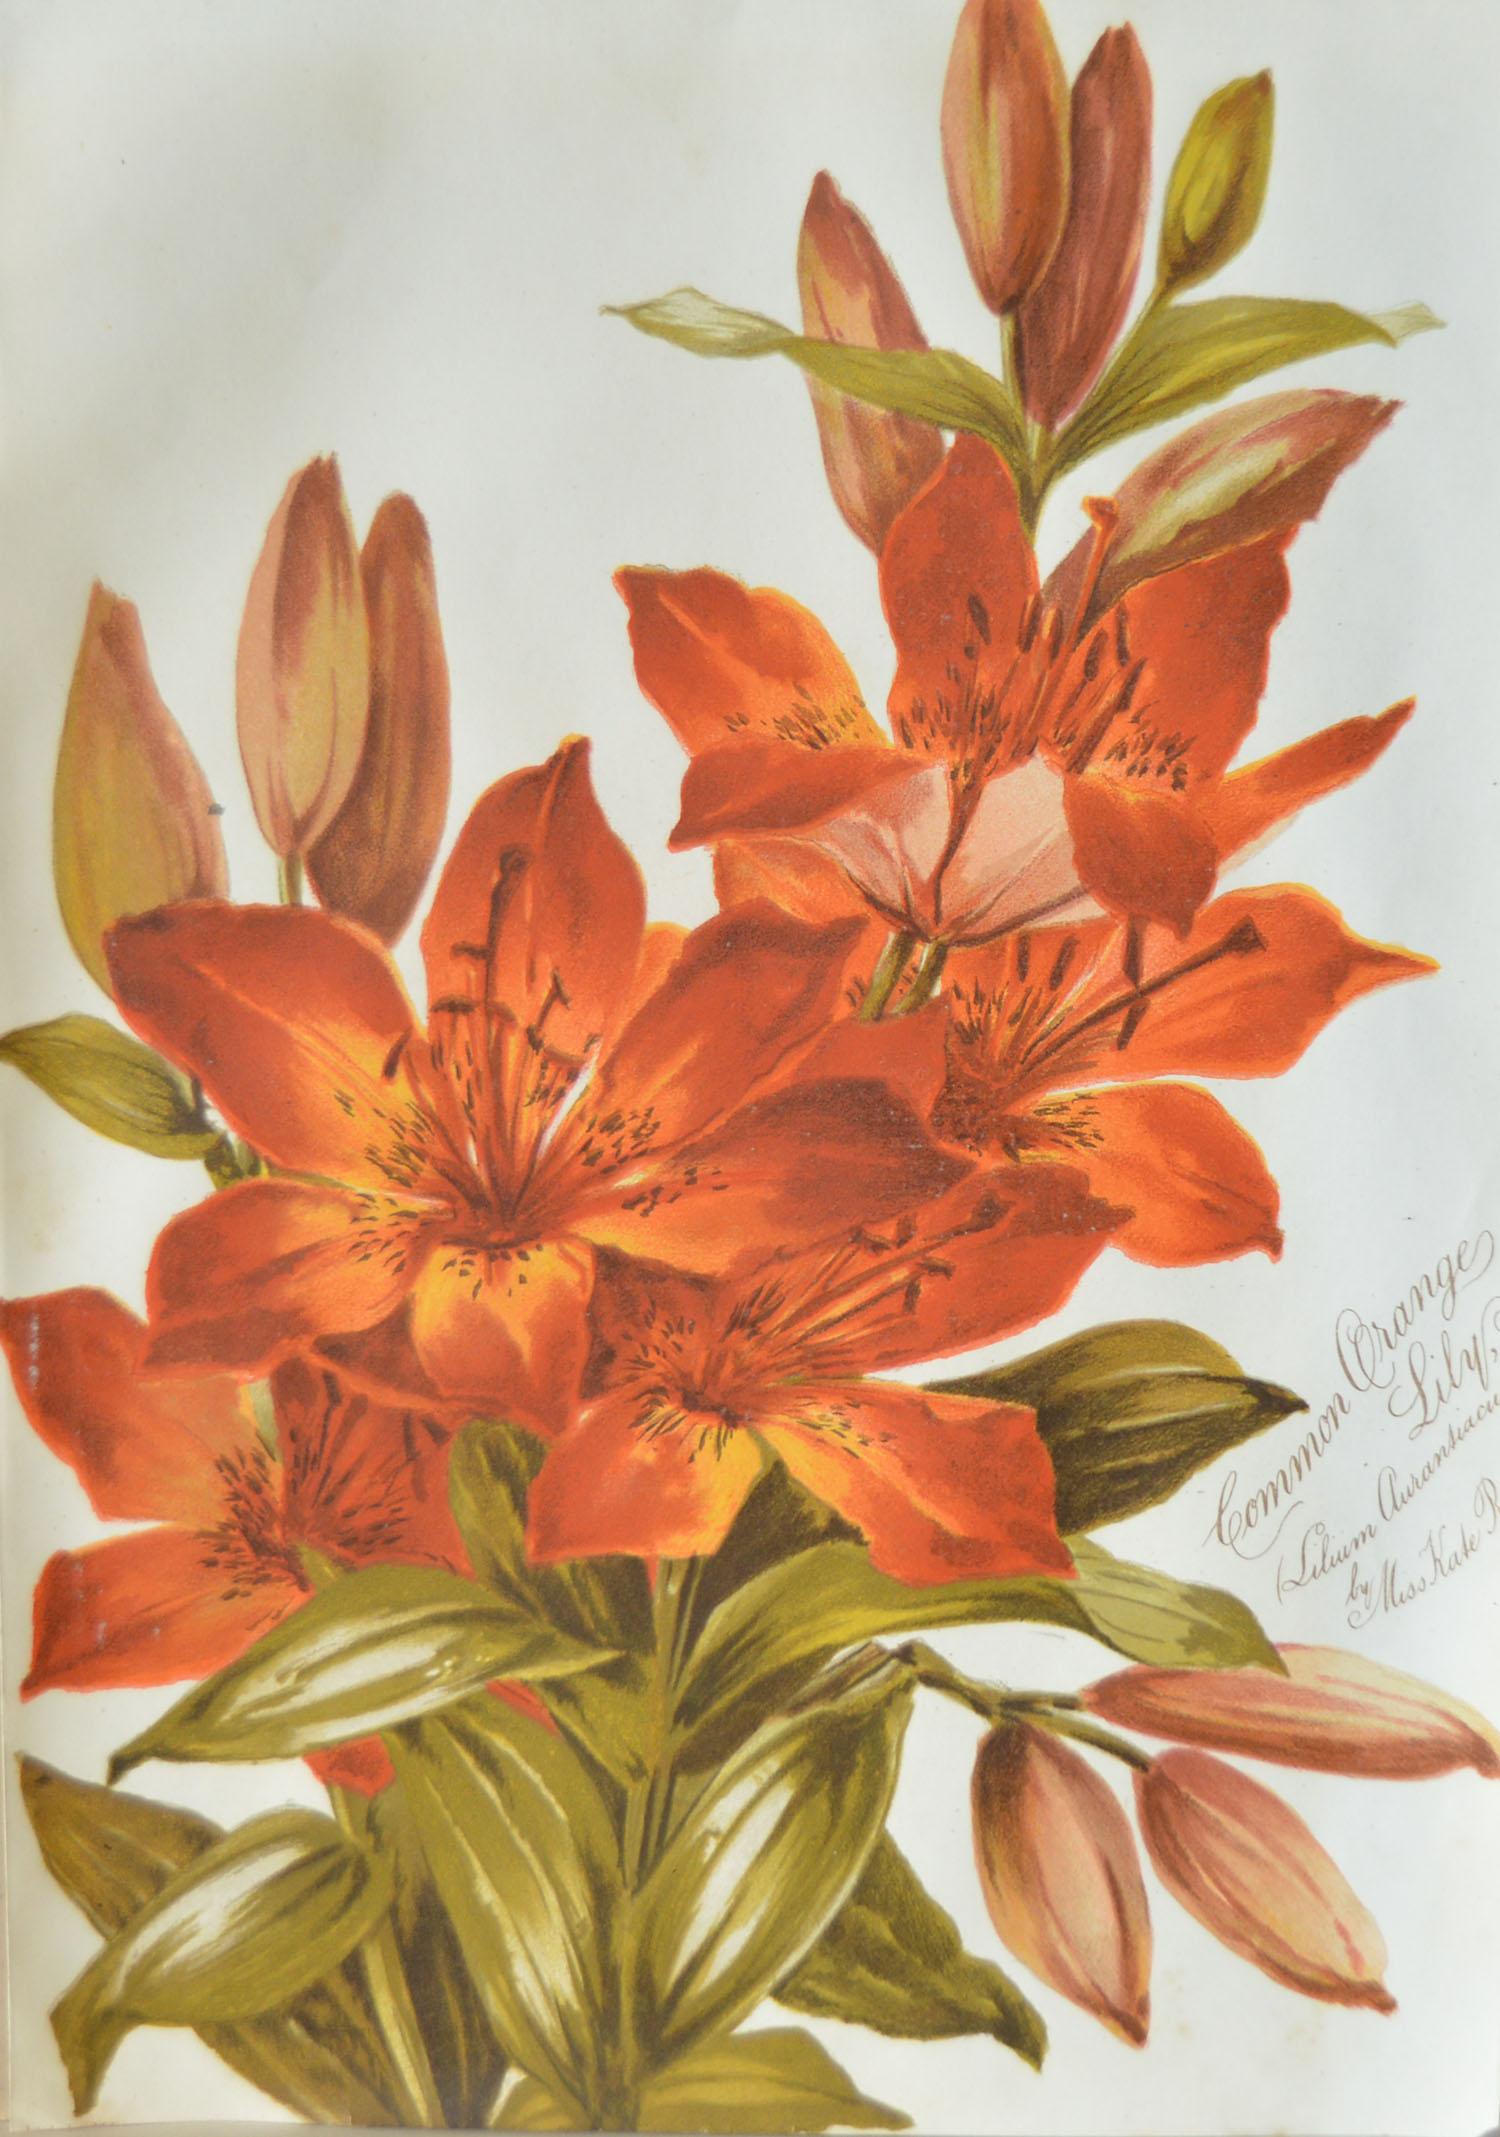 Paper Set of 8 Original Antique Botanical Prints After Kate Rogers